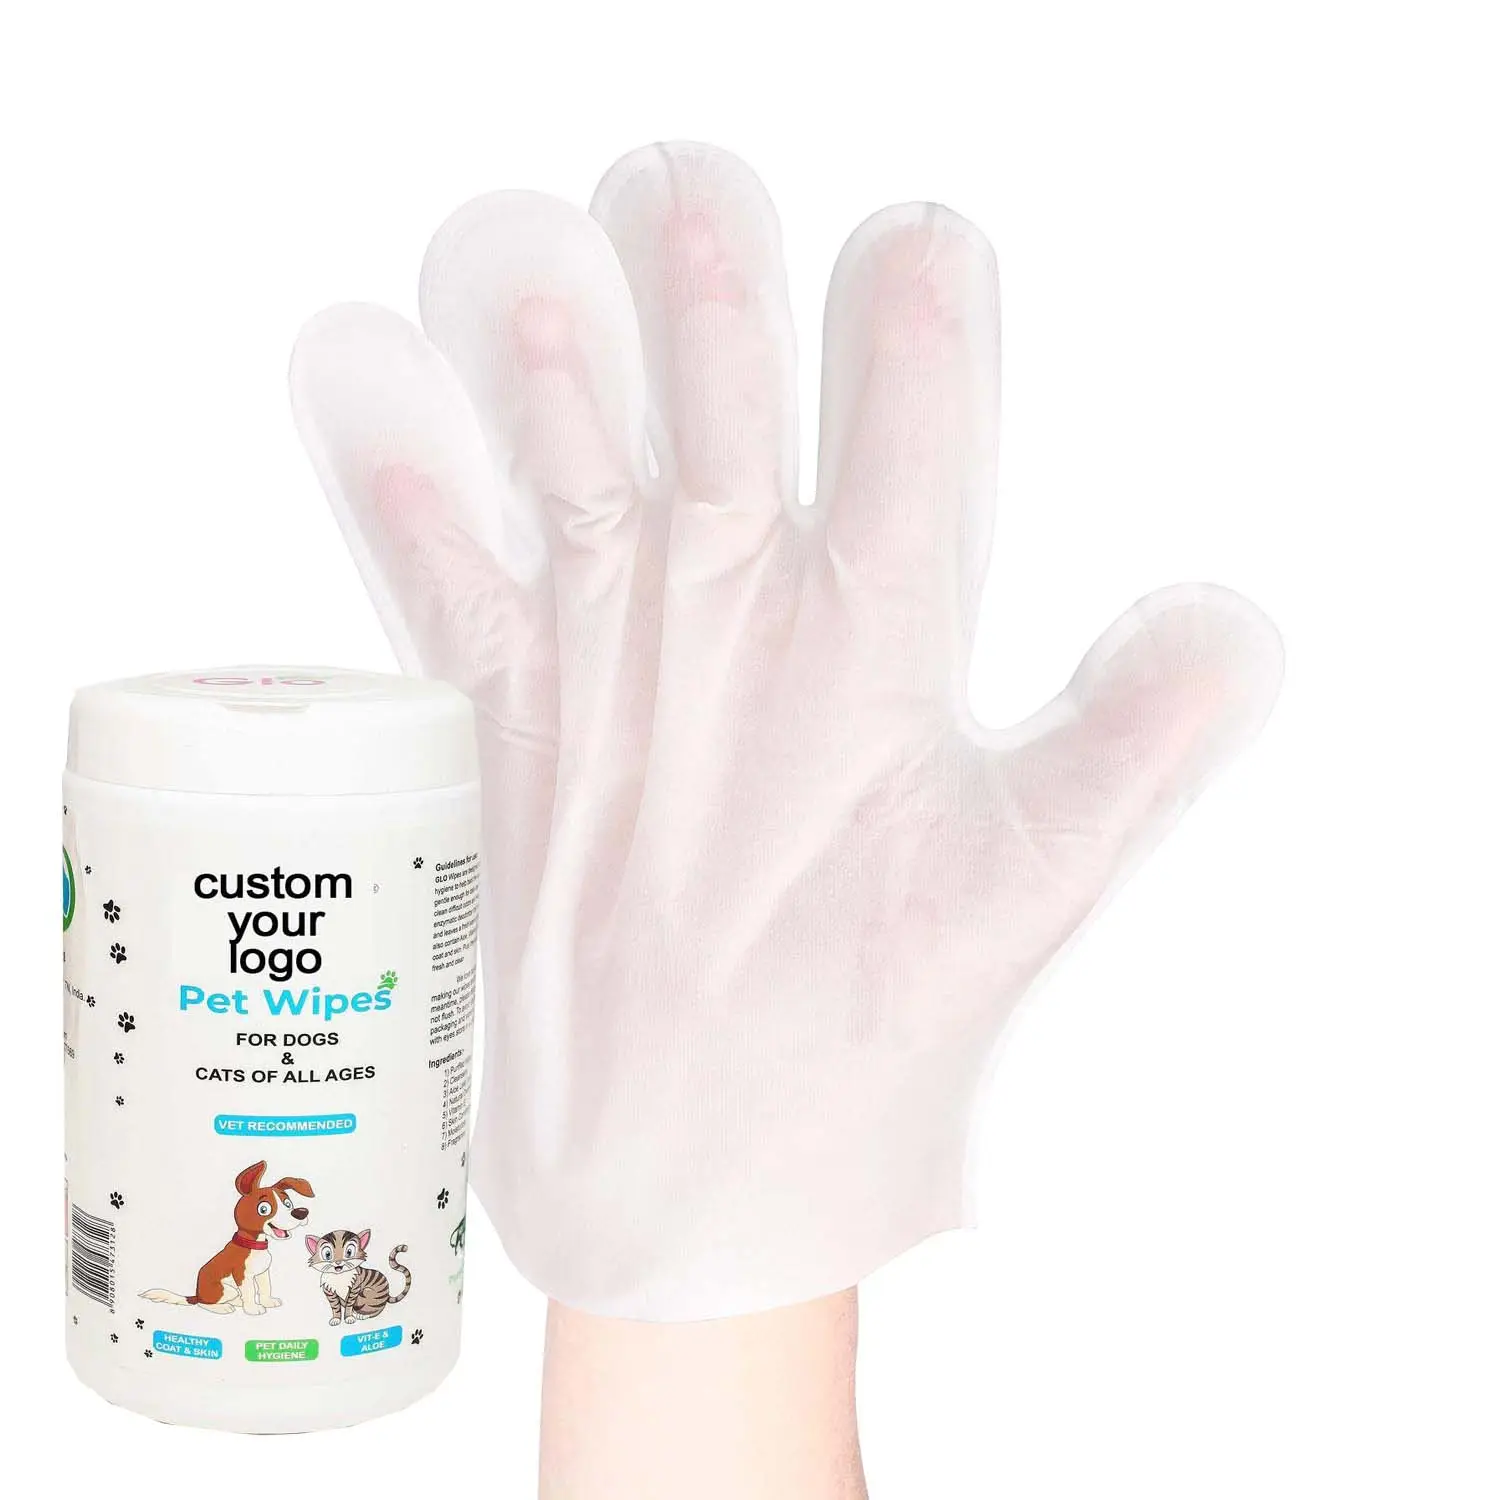 قفازات بشعار مخصص للاستخدام مرة واحدة لتنظيف الحيوانات الأليفة مناديل ورقية بيضاء تقليل الحساسية لتنظيف الحيوانات الأليفة مناديل ورقية مبللة للكلاب والقطط